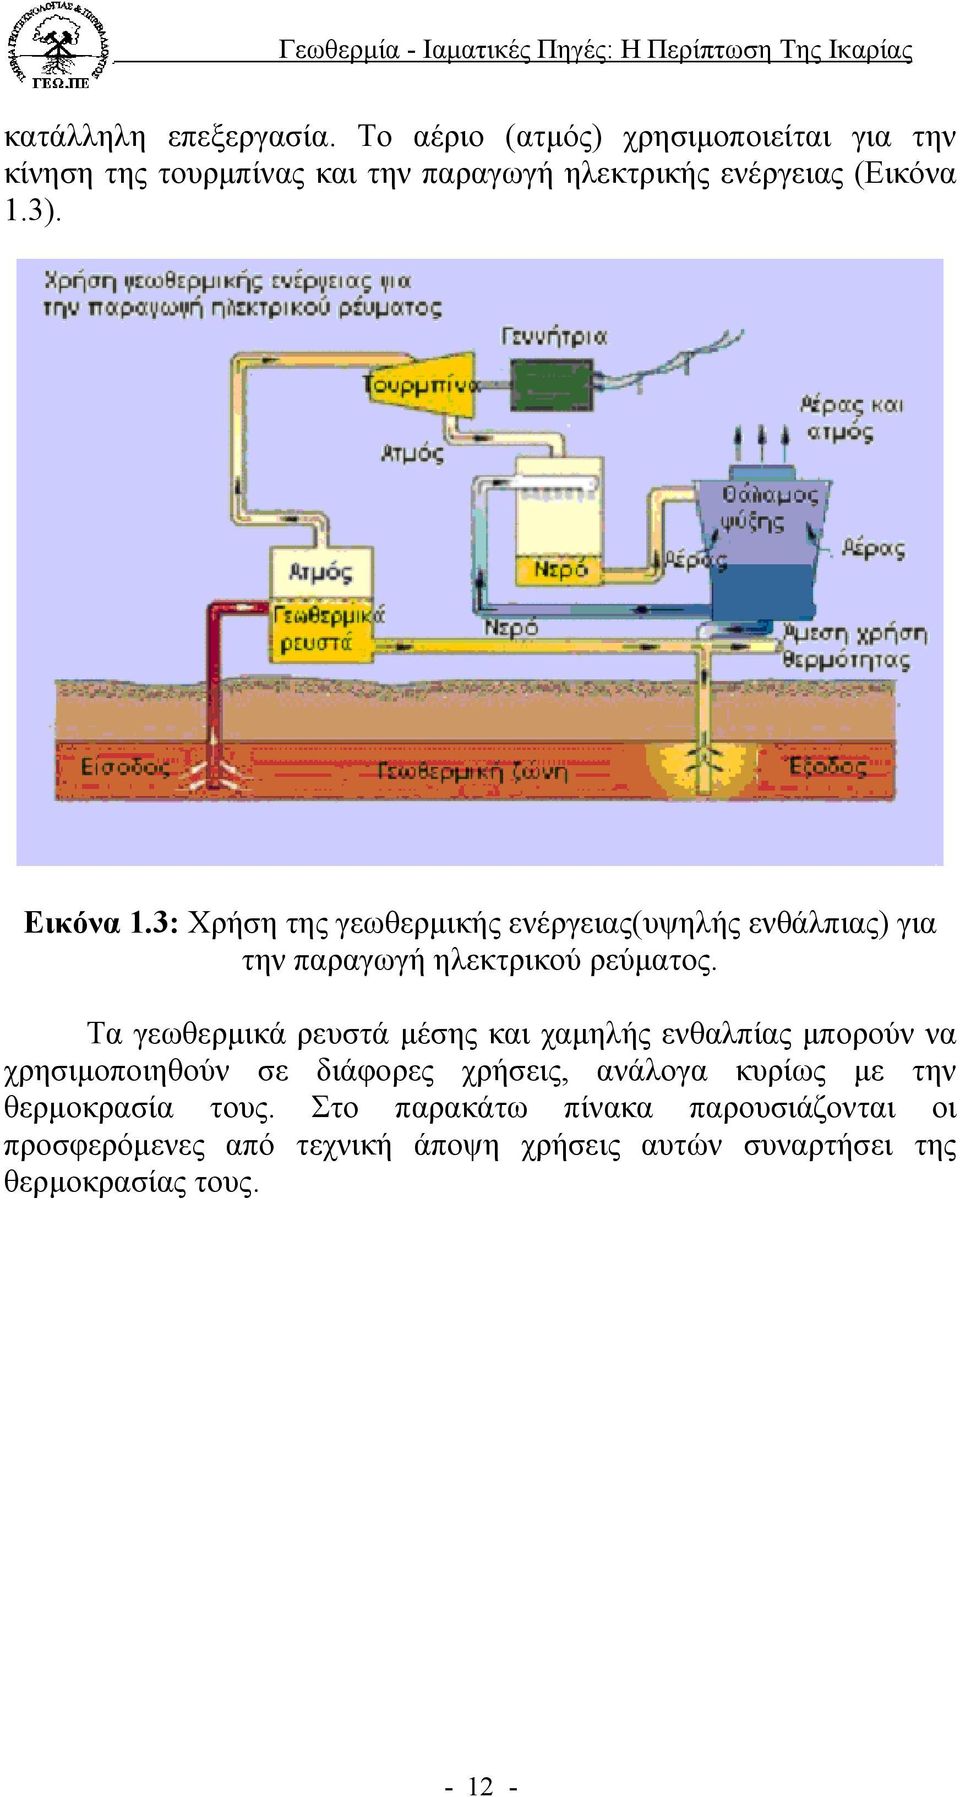 3: Χρήση της γεωθερµικής ενέργειας(υψηλής ενθάλπιας) για την παραγωγή ηλεκτρικού ρεύµατος.